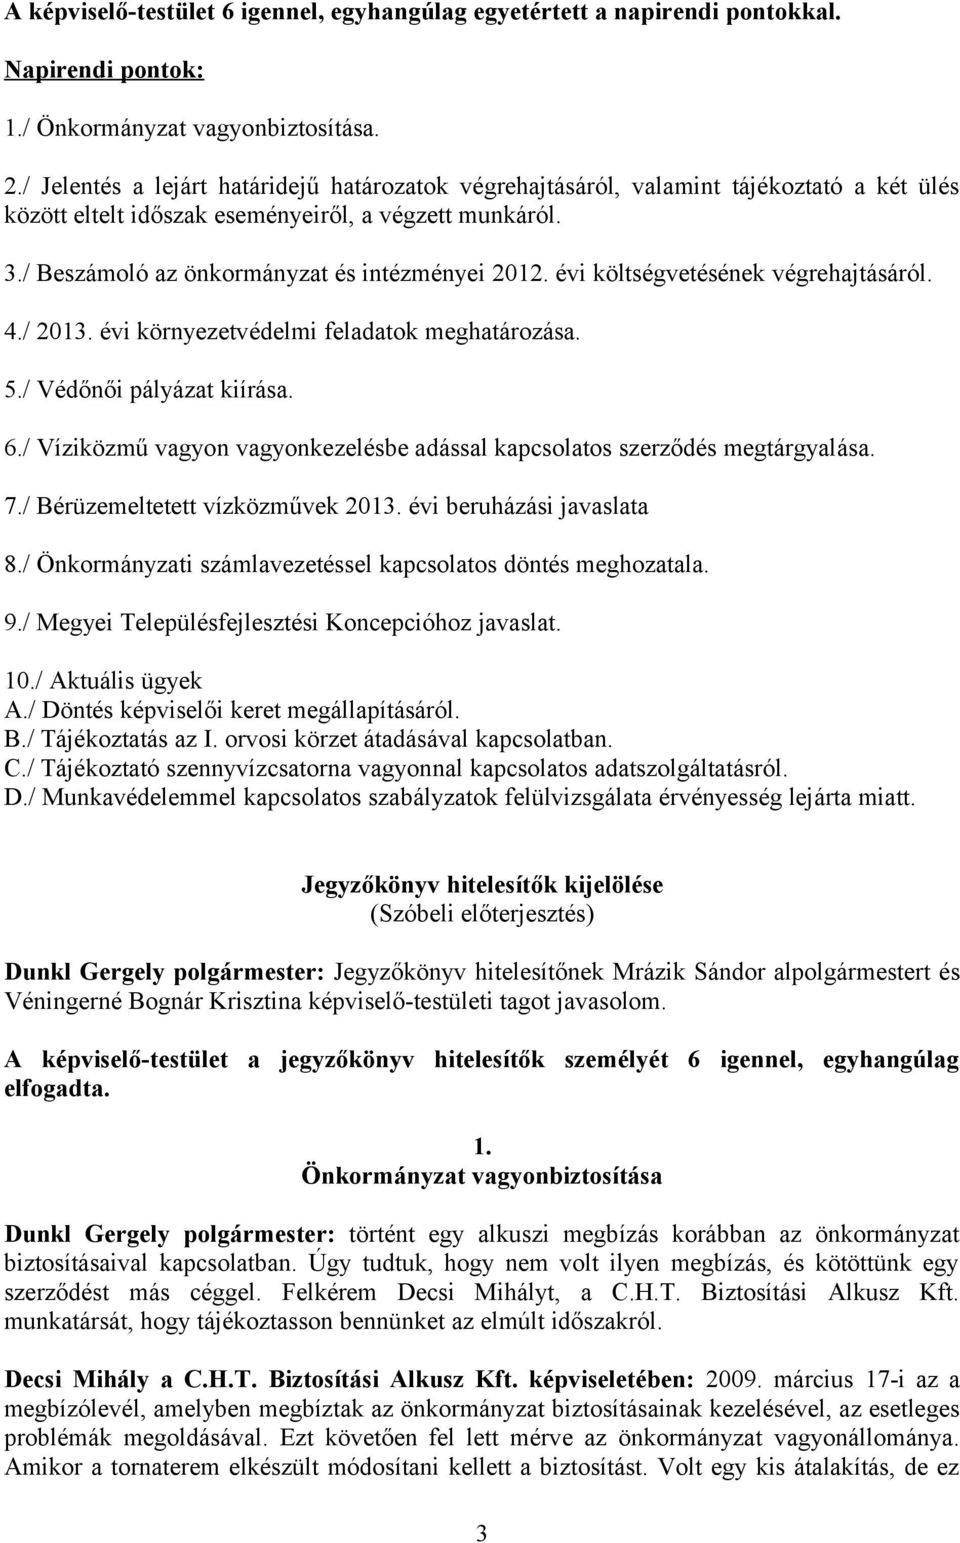 évi költségvetésének végrehajtásáról. 4./ 2013. évi környezetvédelmi feladatok meghatározása. 5./ Védőnői pályázat kiírása. 6.